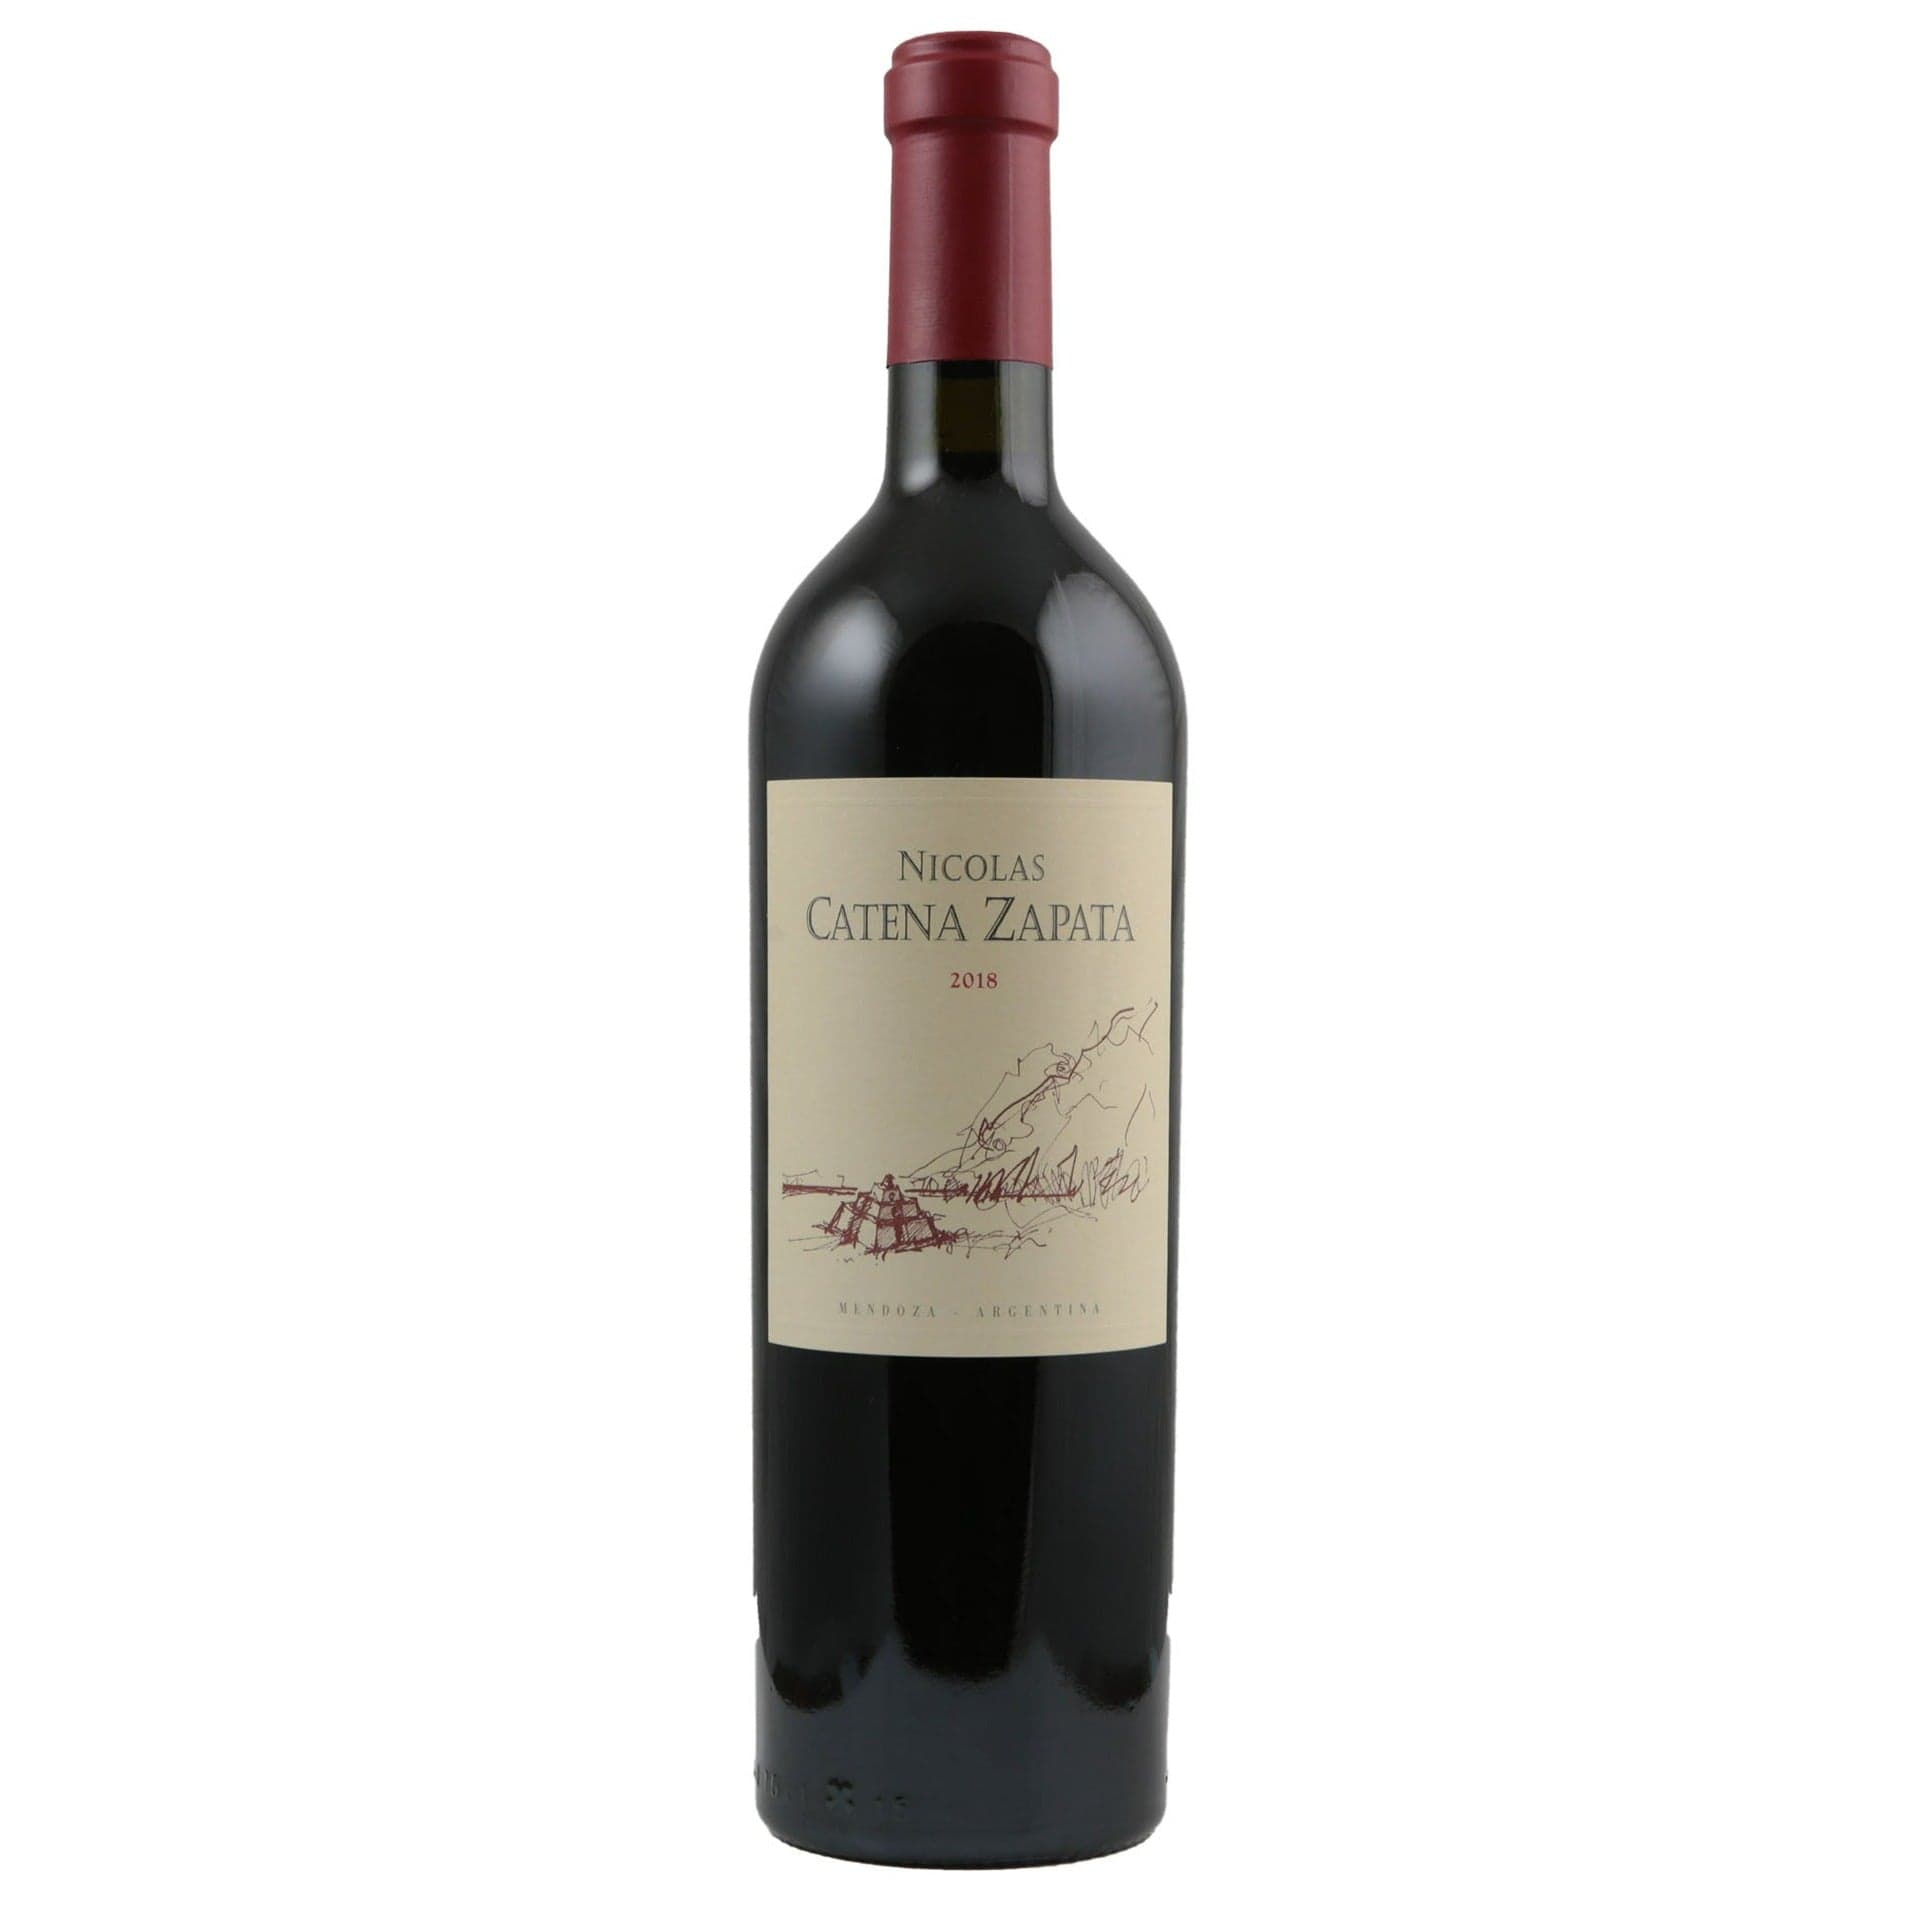 Single bottle of Red wine Catena Zapata, Nicolas Catena Zapata, Mendoza, 2018 65% Cabernet Sauvignon & 35% Malbec